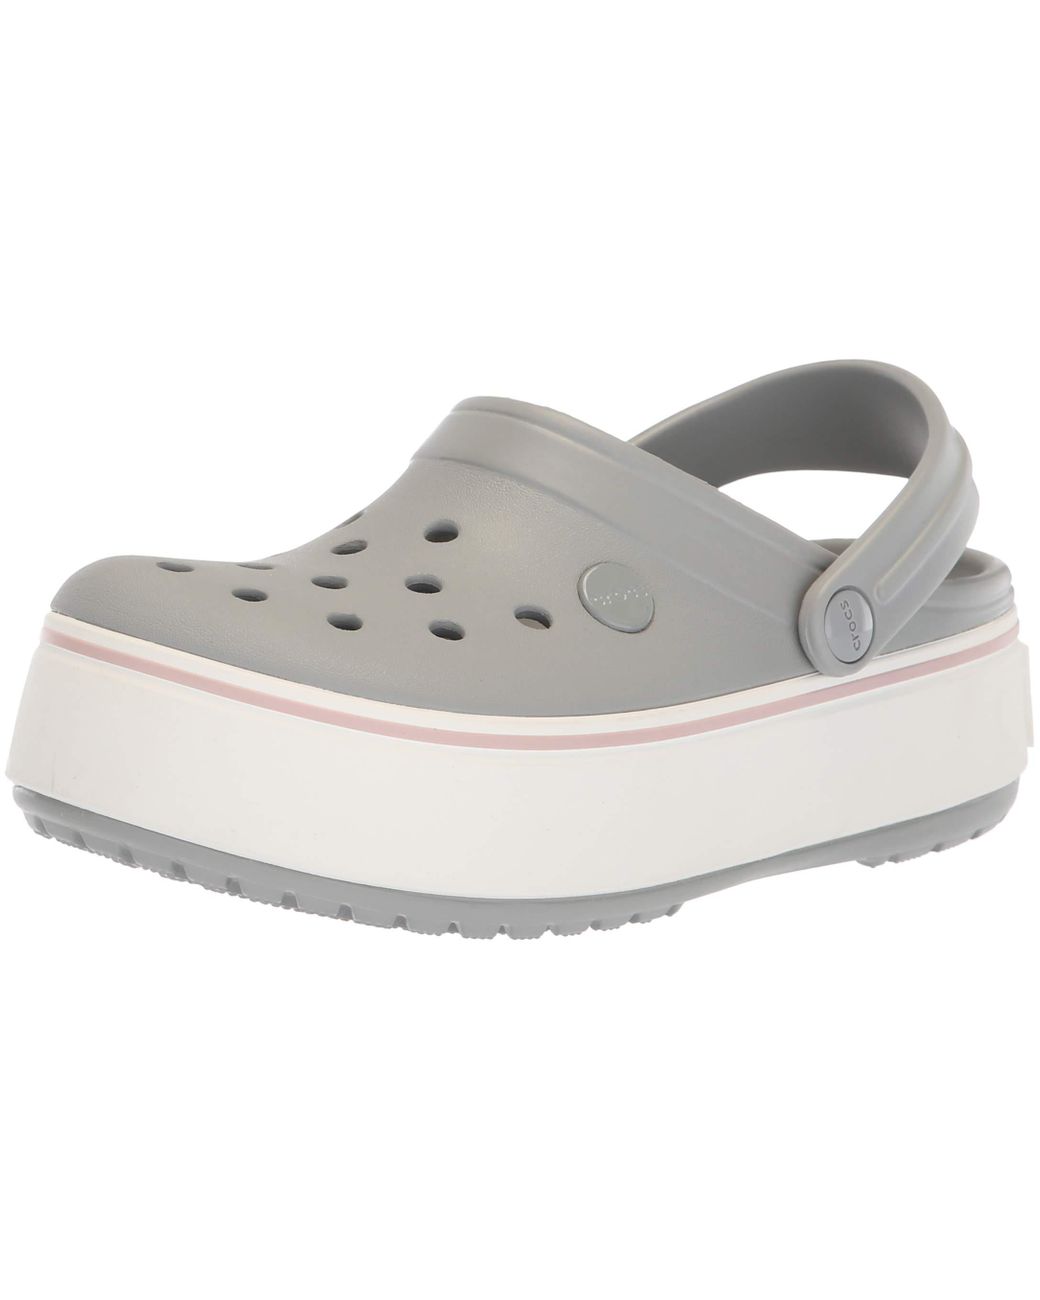 gray platform crocs